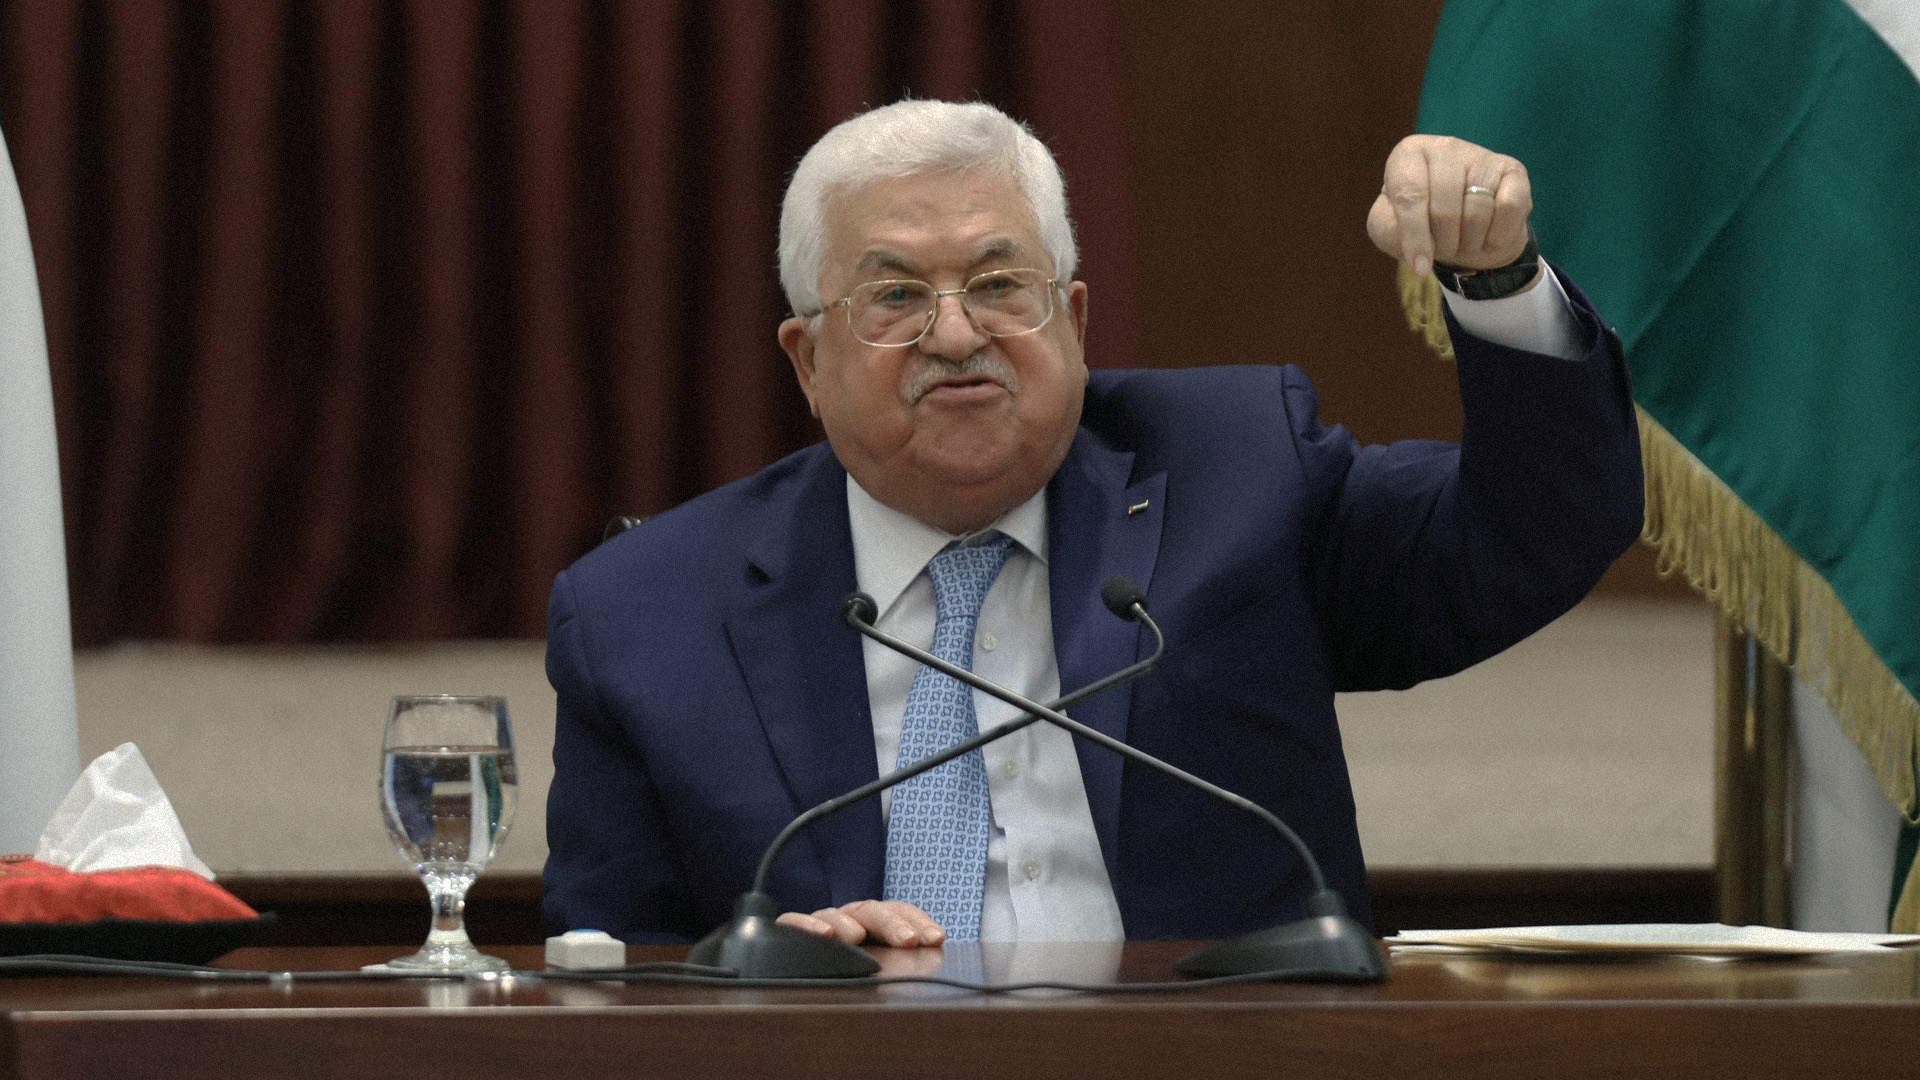 صورة عباس يؤكد أنَّ عمَالتهُ وتمسُّكه بالسّلطة ووجوده بحد ذاته مؤامرة إسرائيليّة تحاك ضده